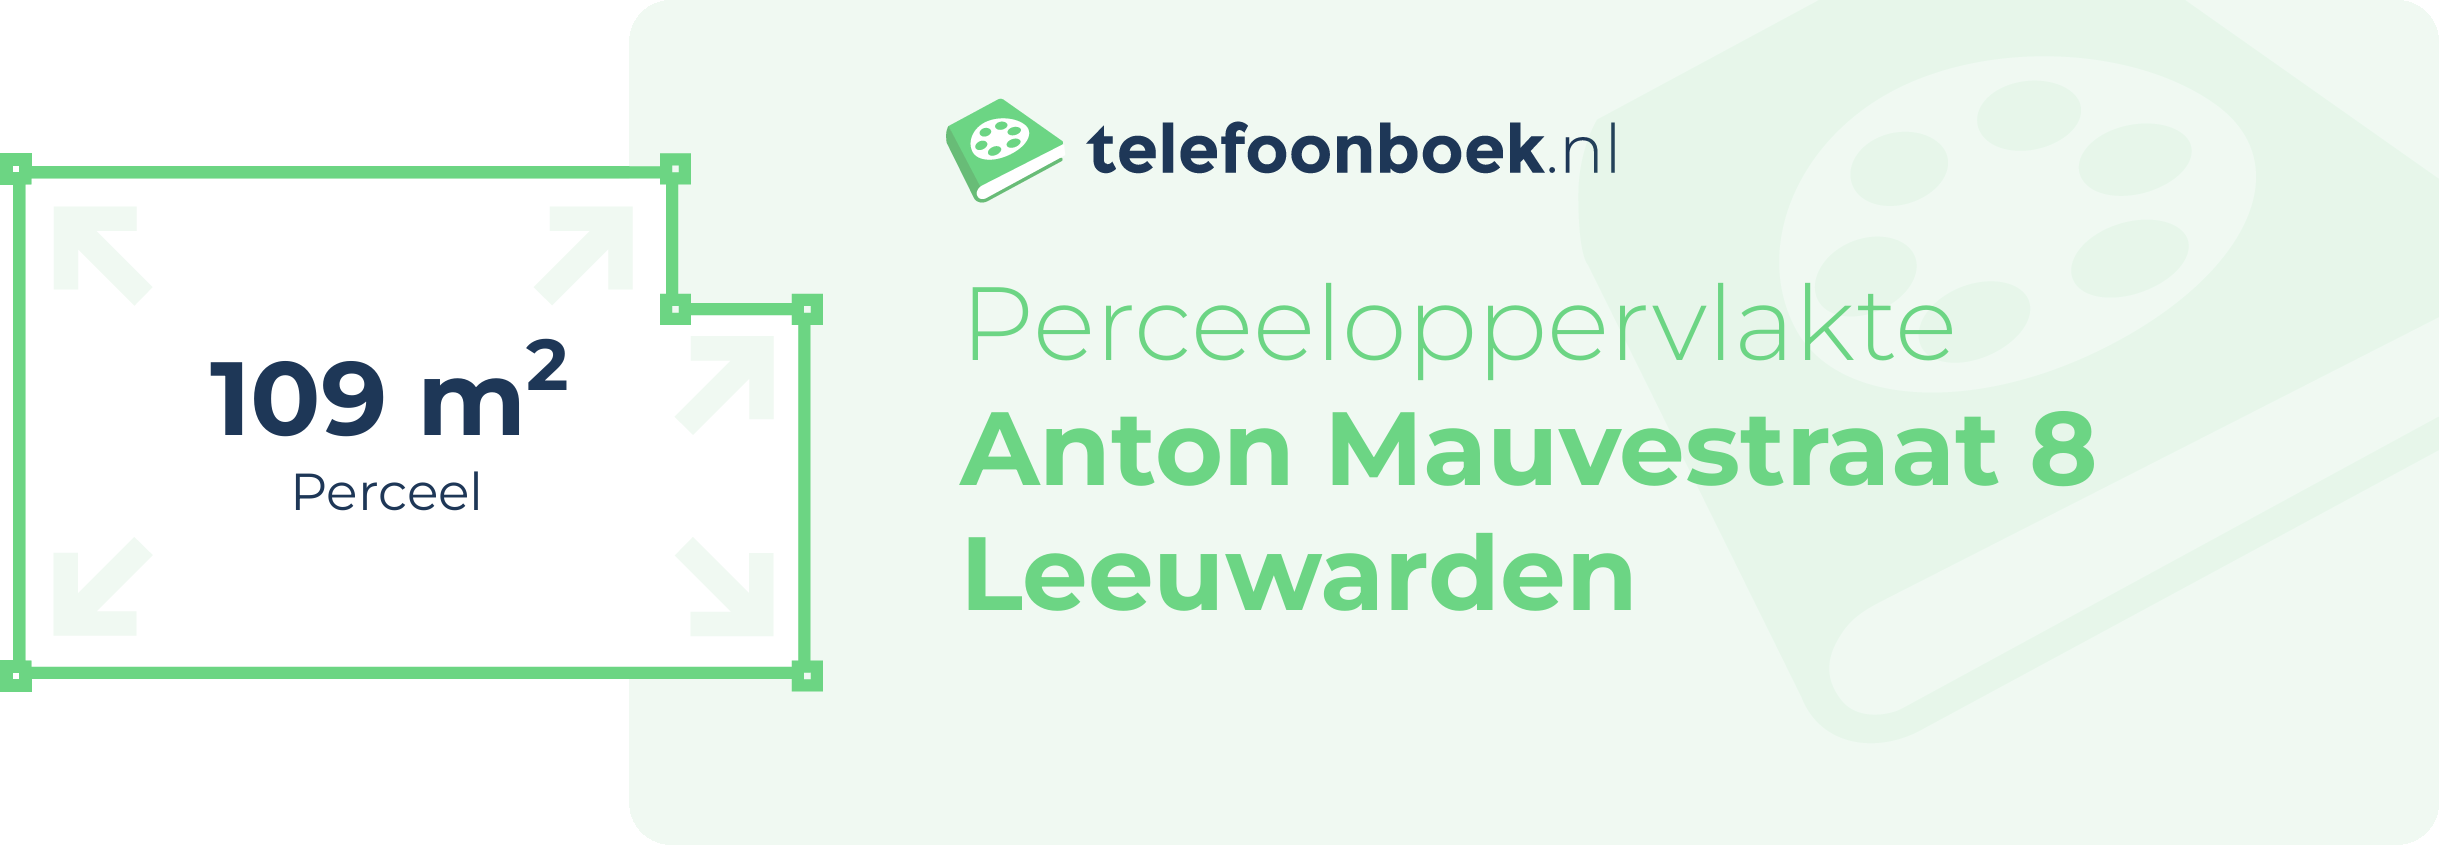 Perceeloppervlakte Anton Mauvestraat 8 Leeuwarden